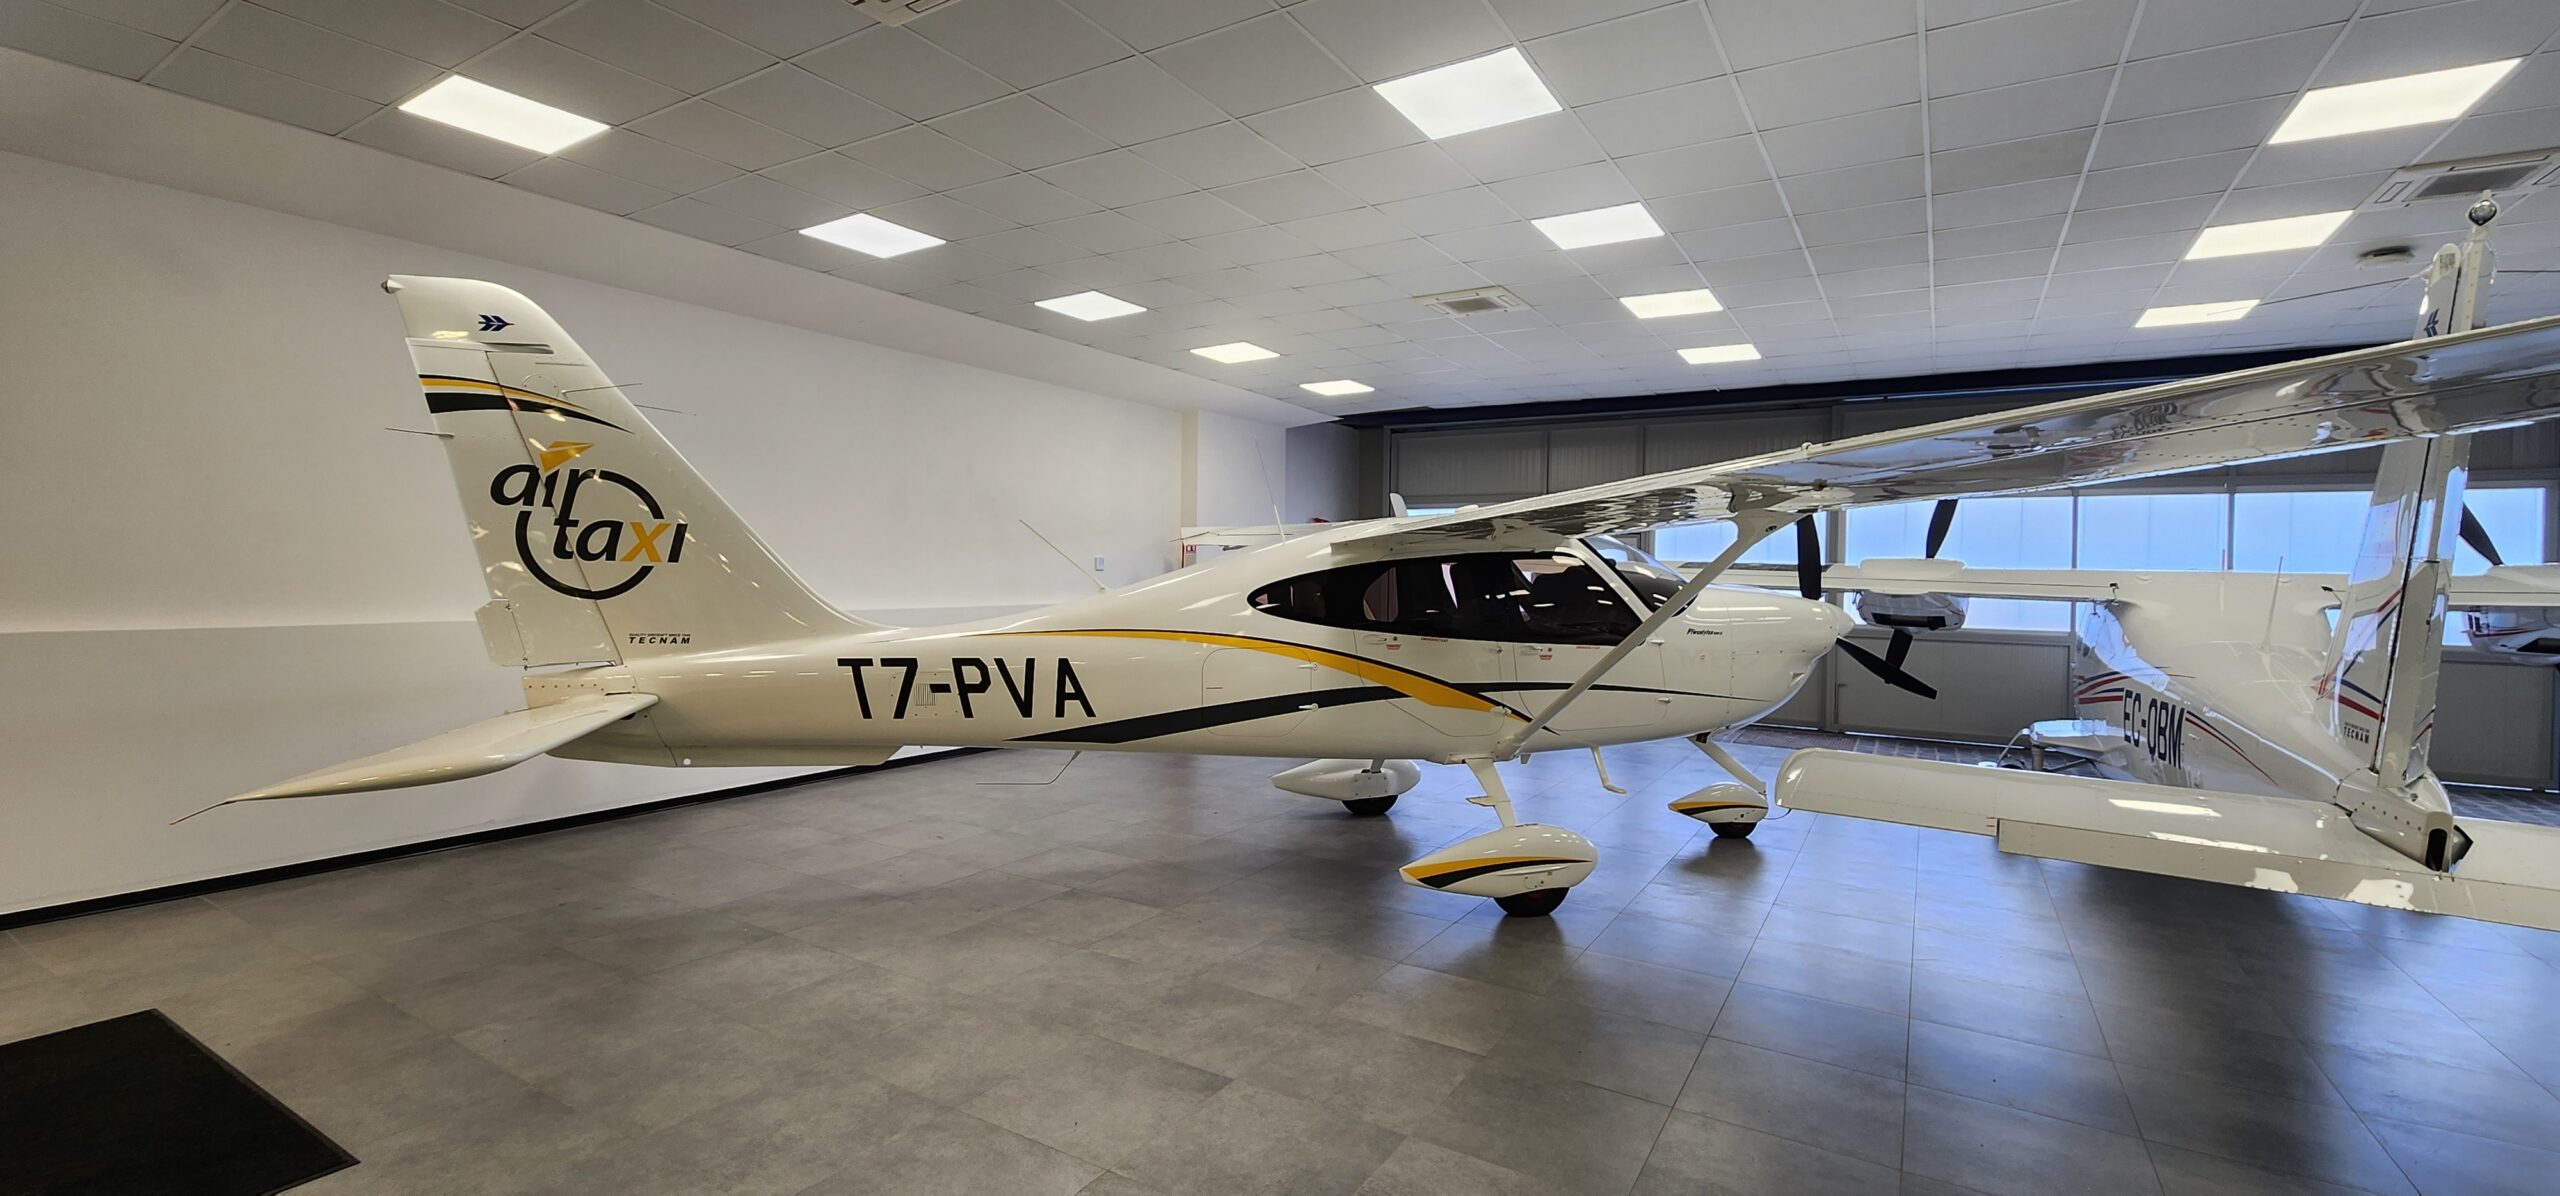 Air Taxi T7-PVA